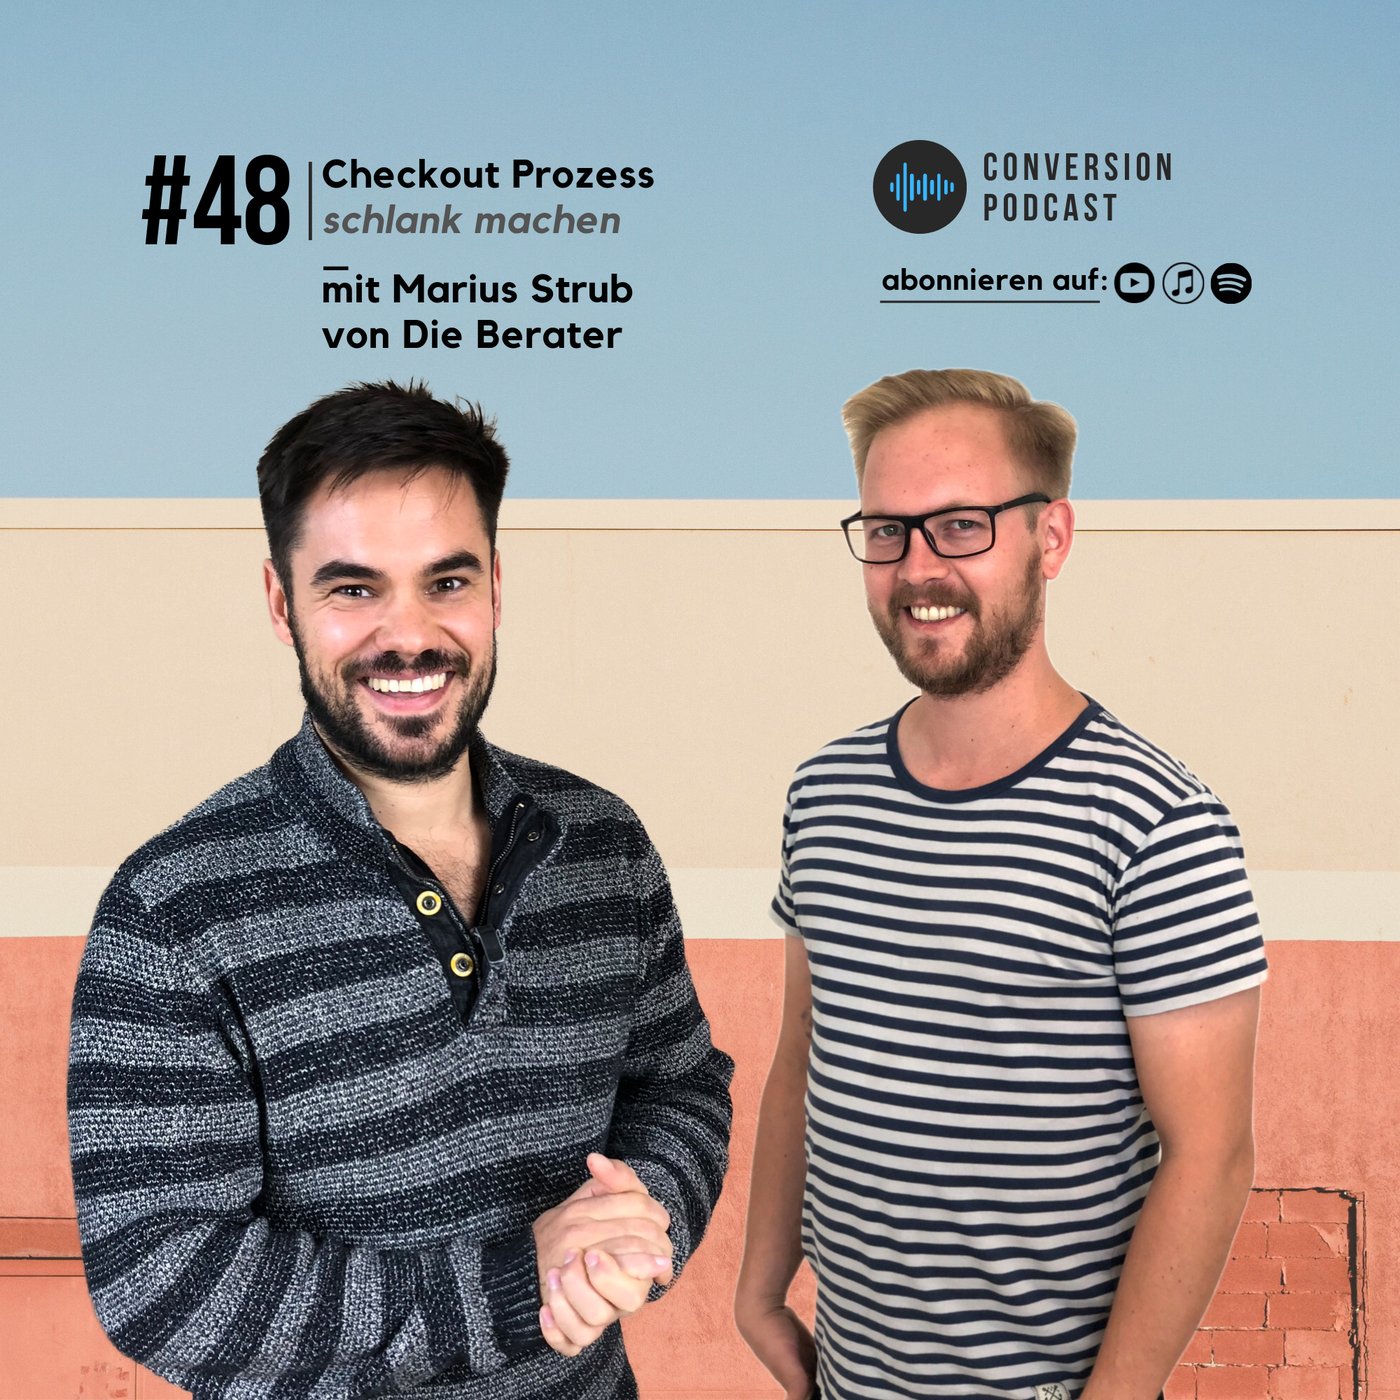 Checkout Prozess schlank machen – mit Marius Strub von Die Berater| #48 Conversion Podcast